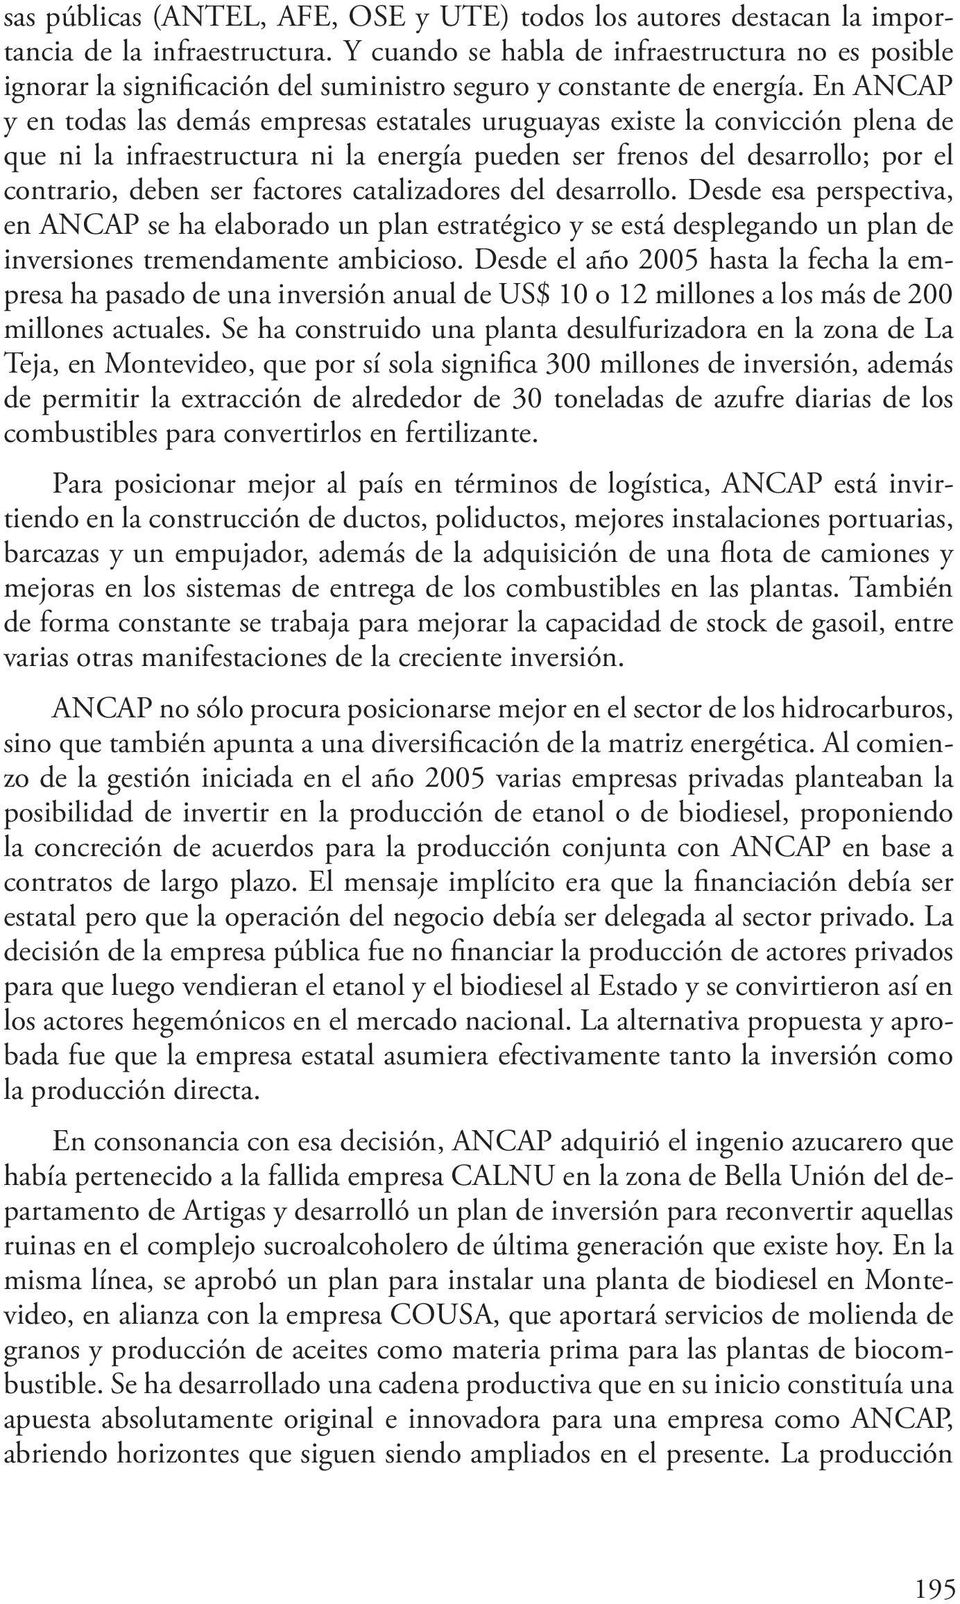 En ANCAP y en todas las demás empresas estatales uruguayas existe la convicción plena de que ni la infraestructura ni la energía pueden ser frenos del desarrollo; por el contrario, deben ser factores